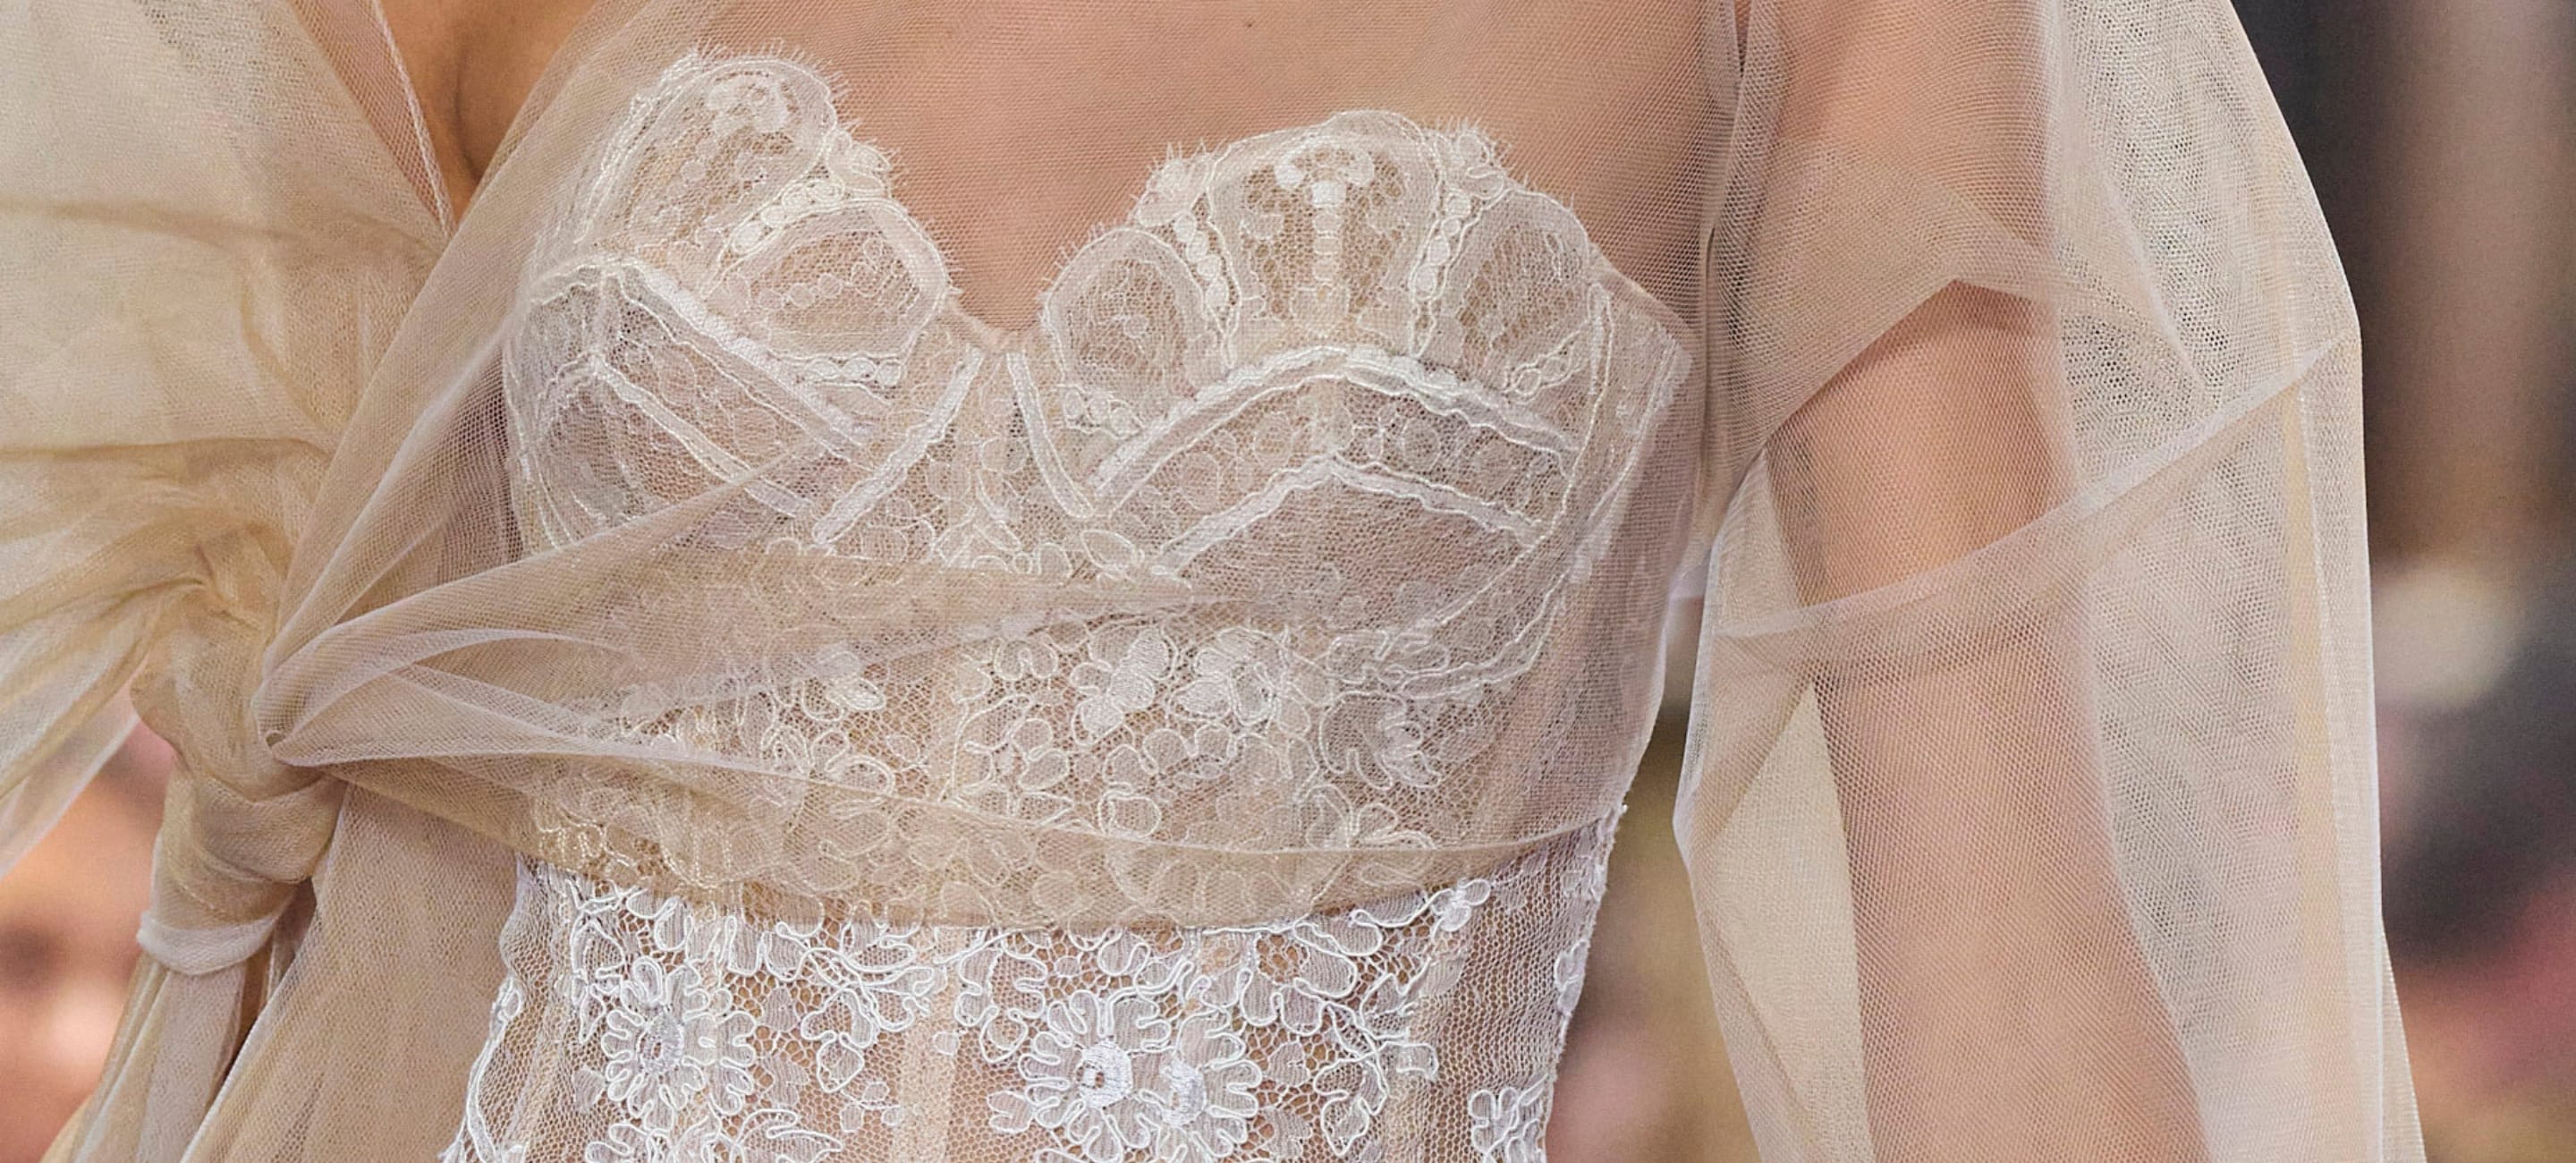 Dolce&Gabbana® Women's Underwear : luxury lingerie